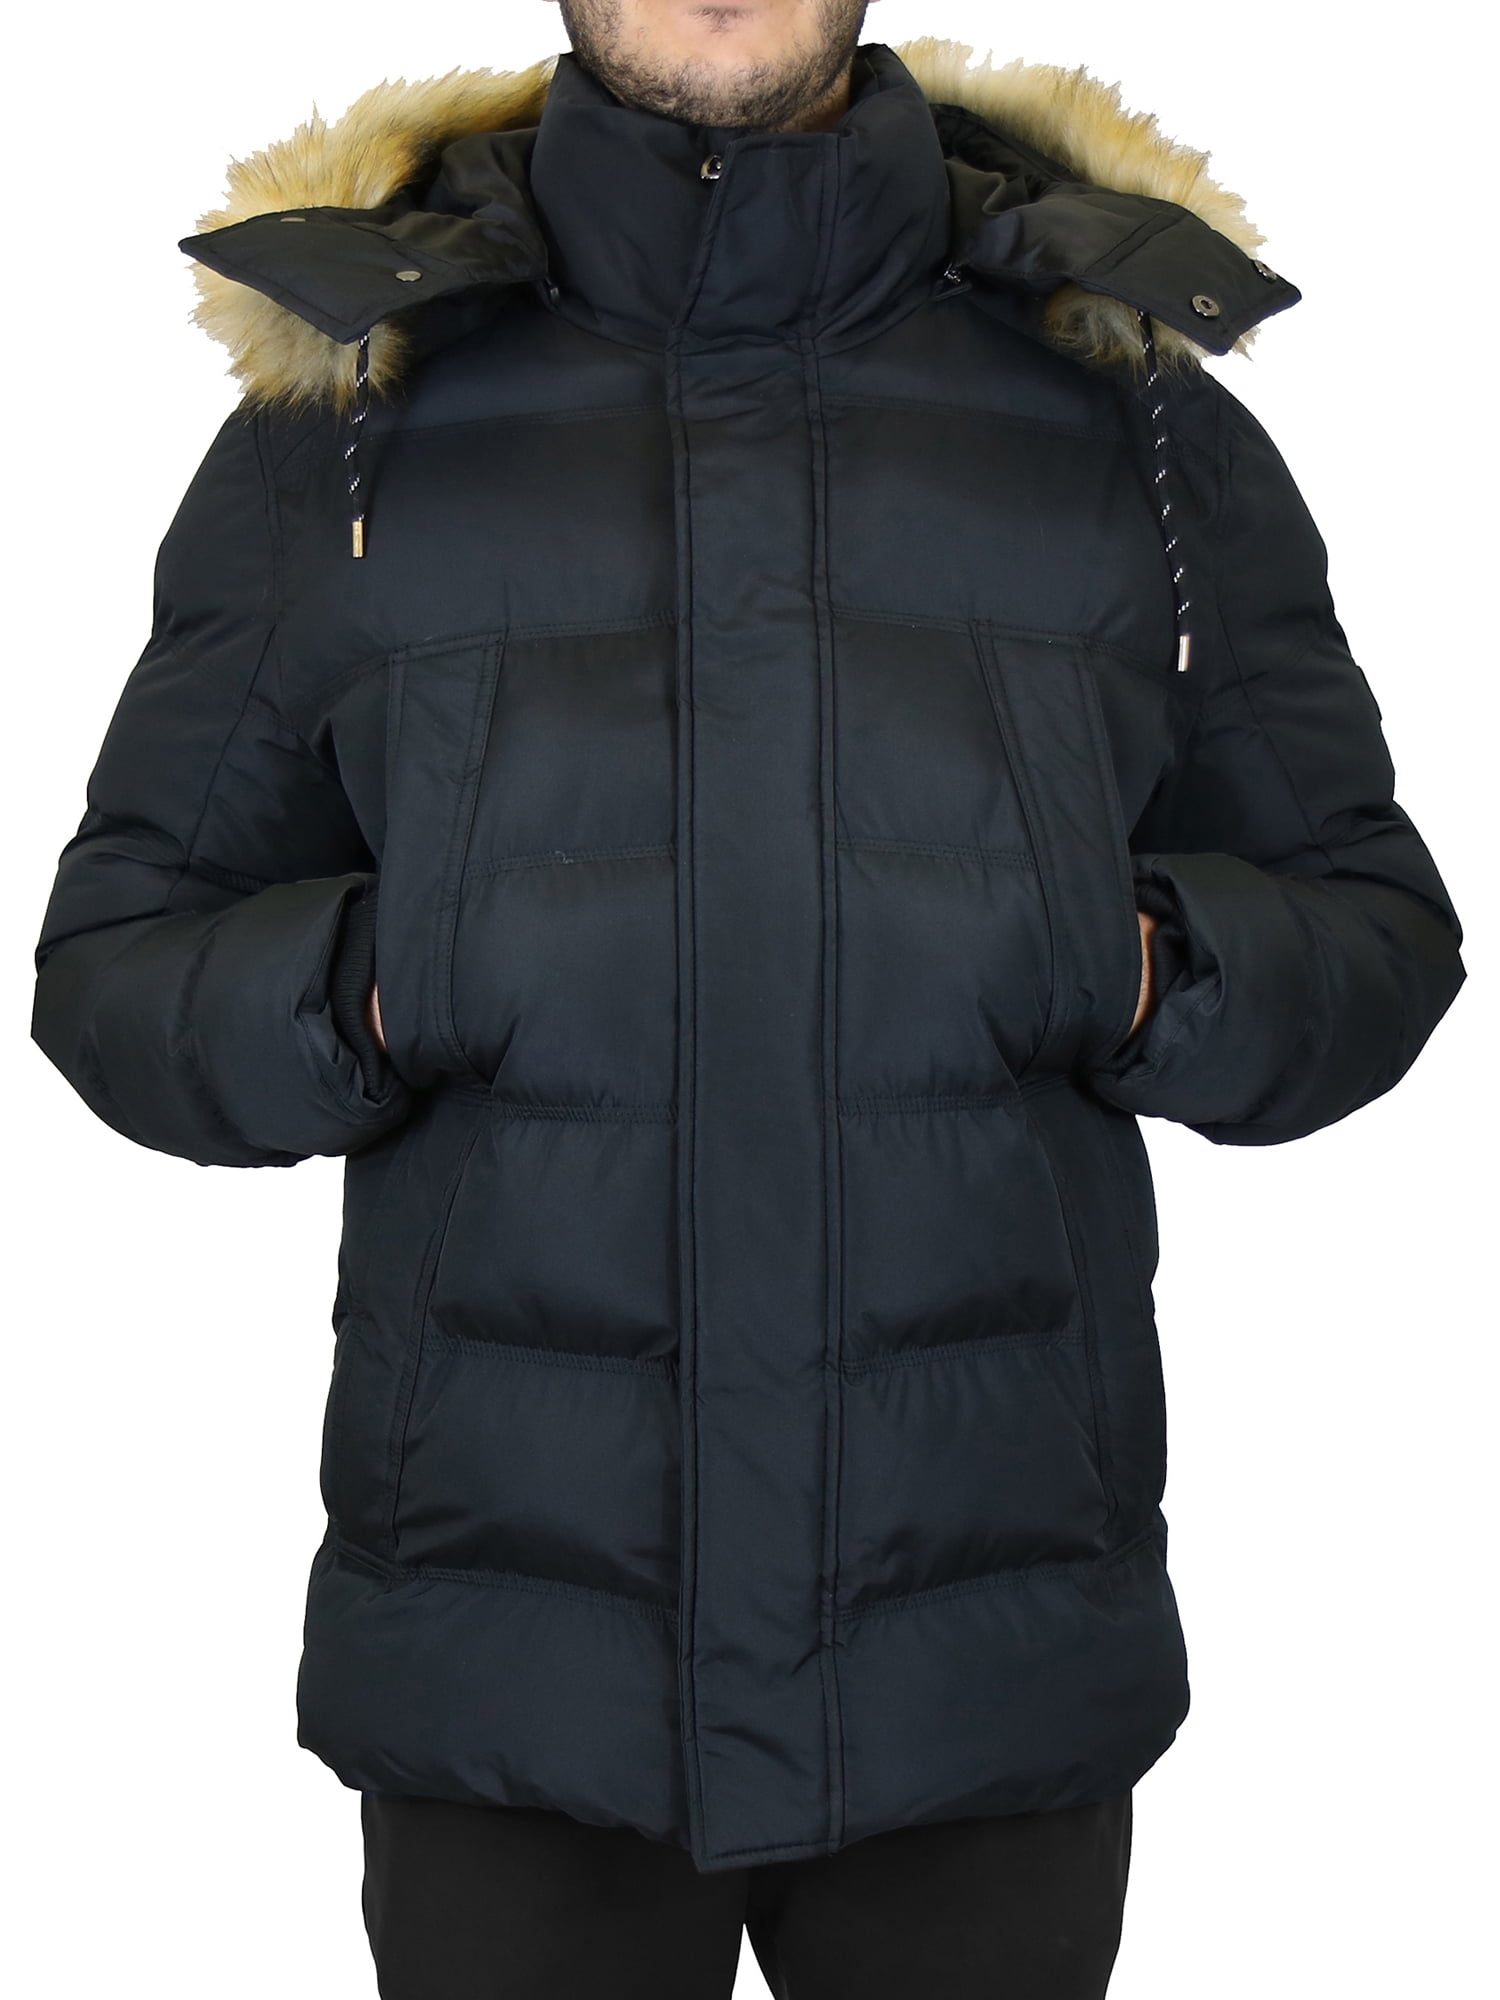 JESPER Women Warm Long Jacket Faux Fur Collar Hooded Coat Big Size Parka Windbreaker Outwear 